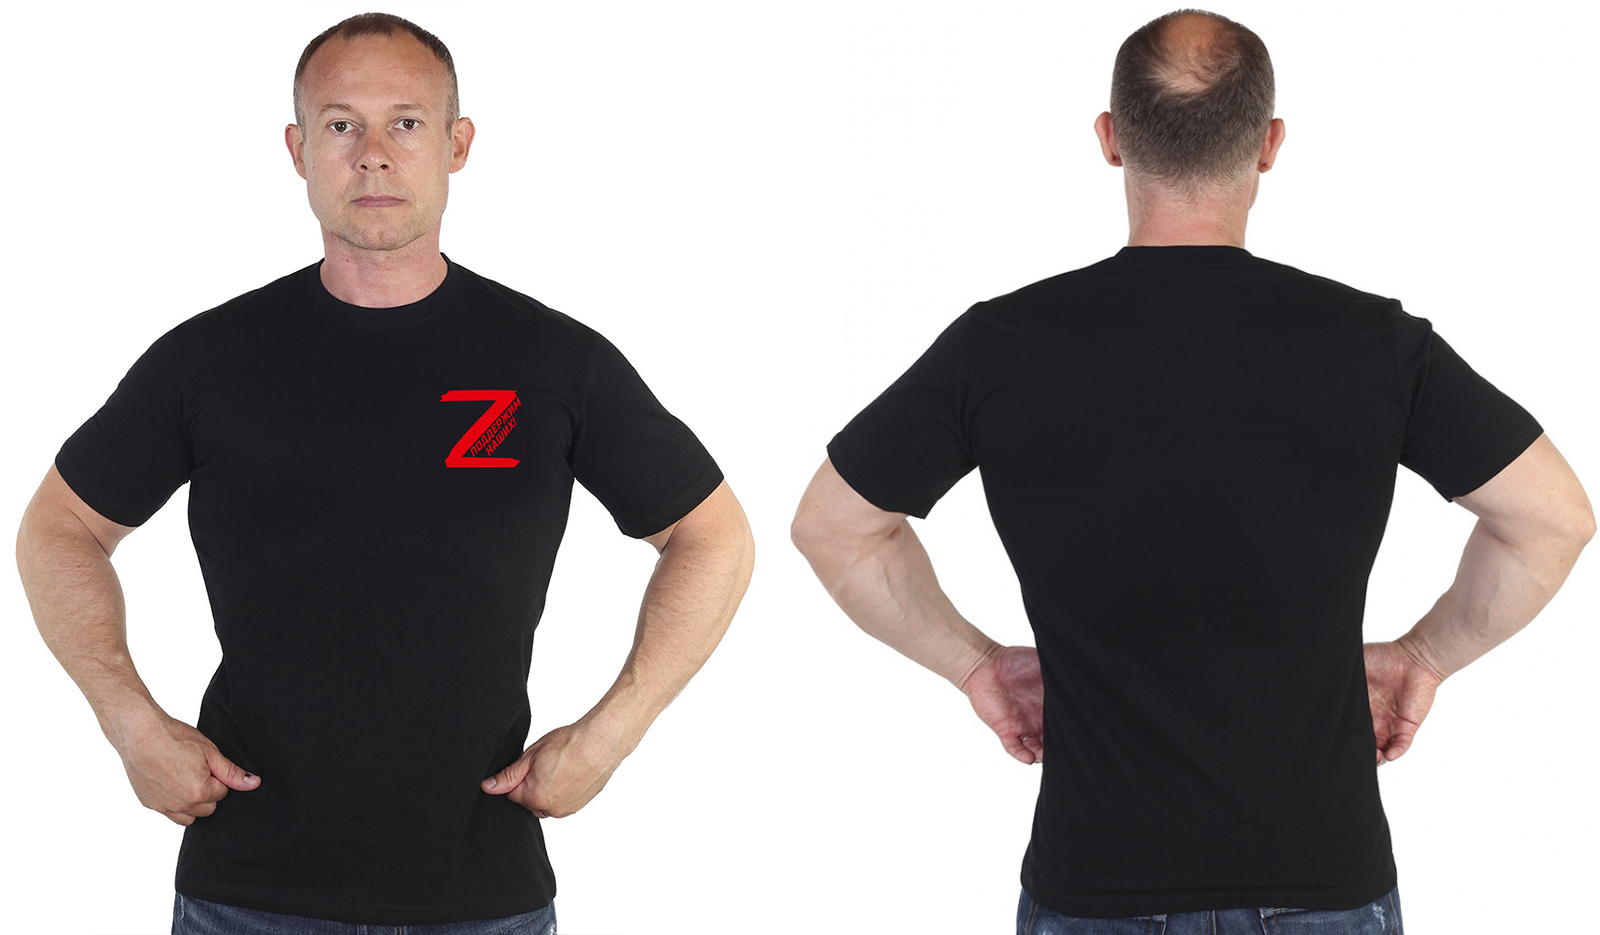 Купить футболку для мужчин со знаком Z 